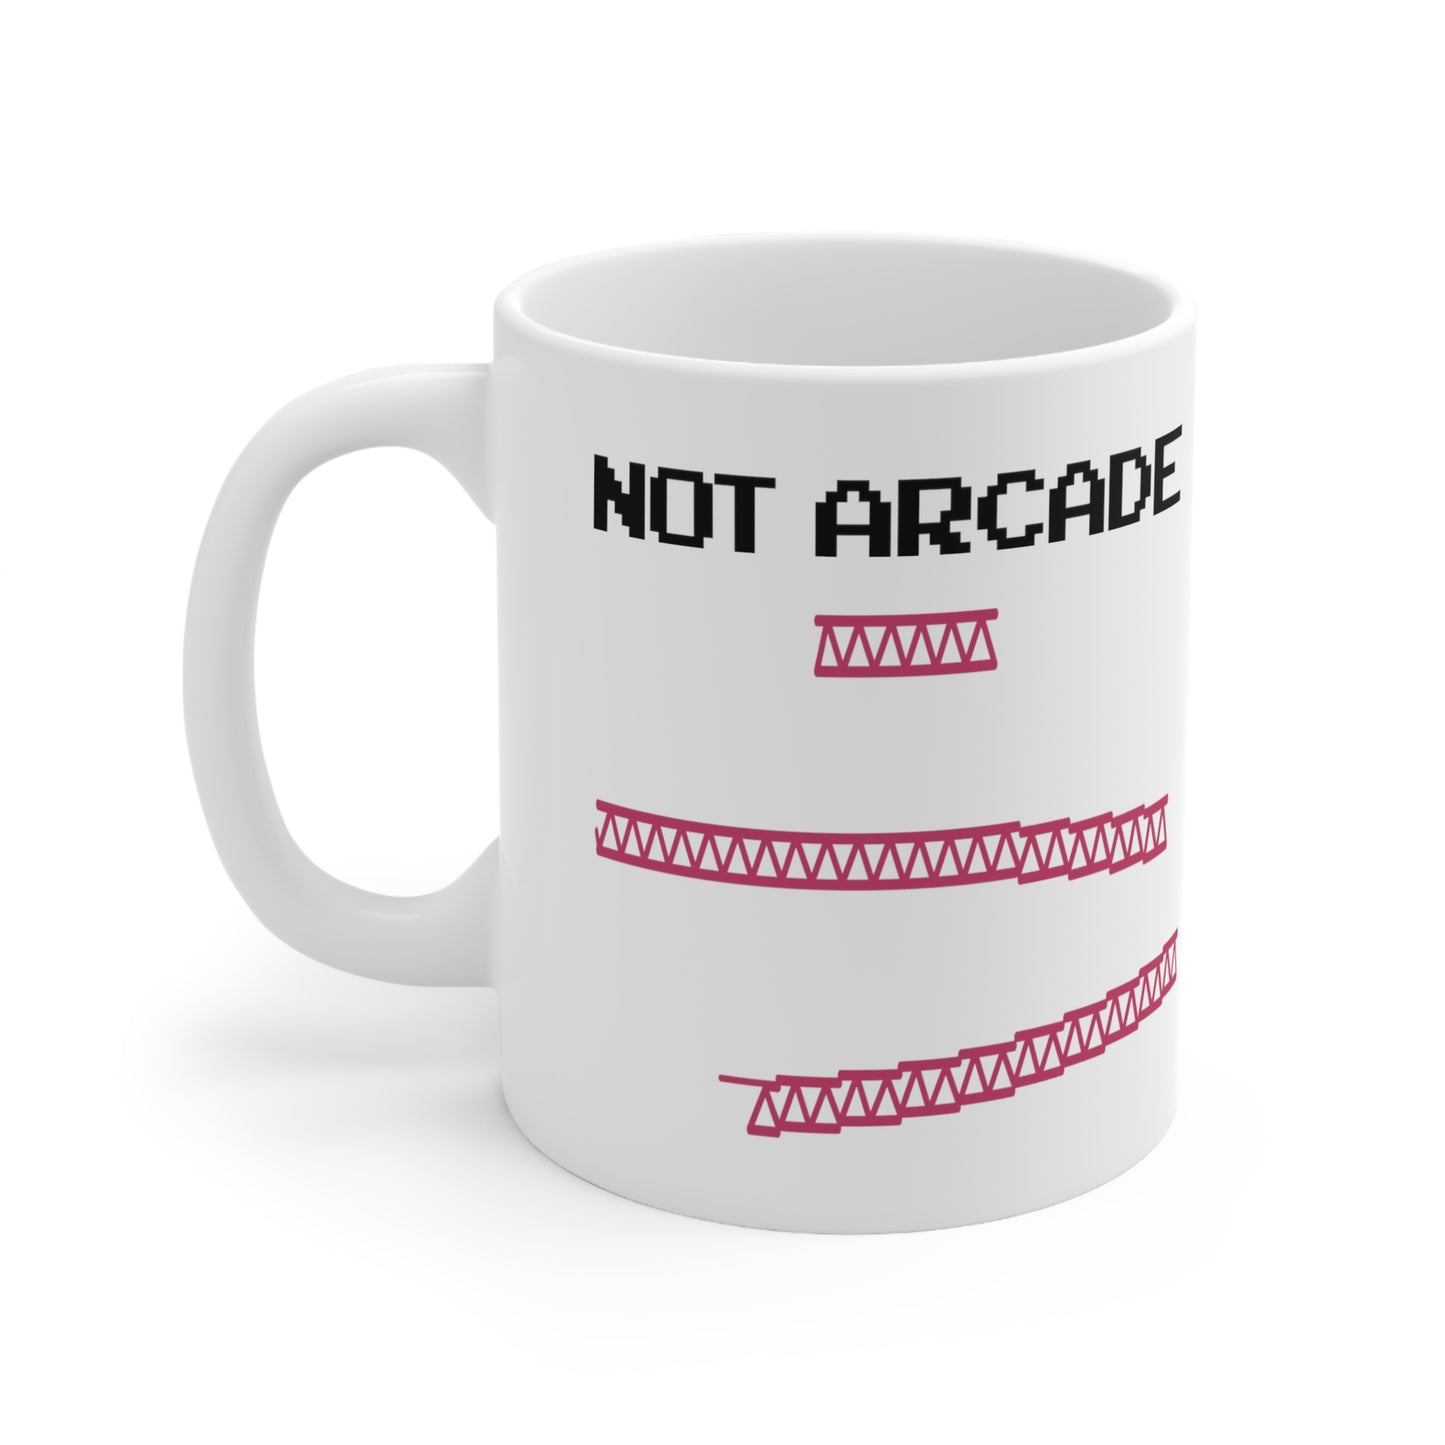 NOT ARCADE - Ceramic Mug 11oz - WHITE